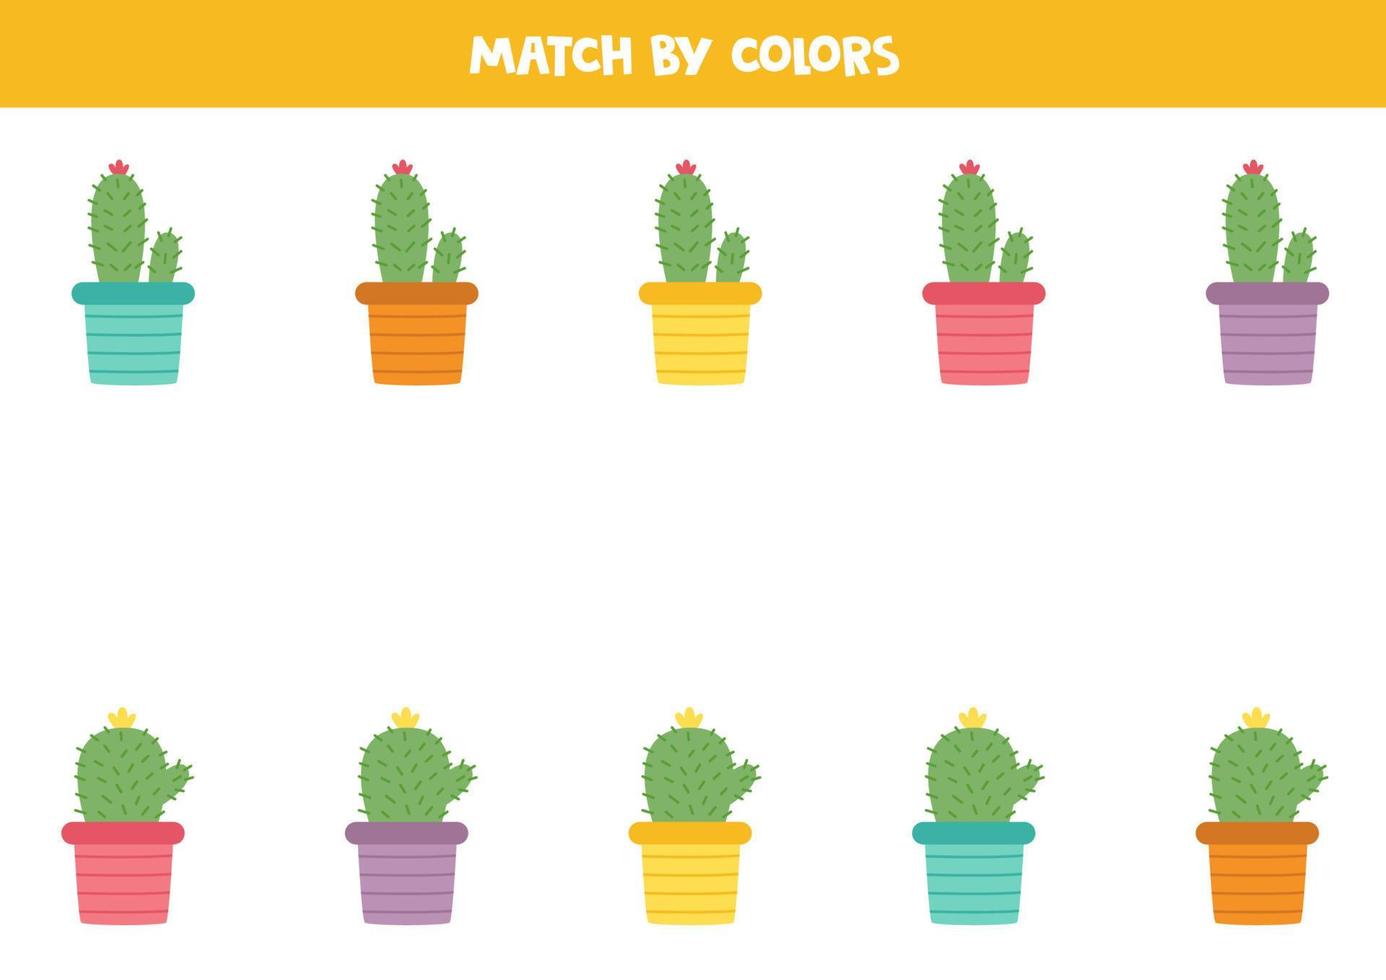 färgmatchningsspel för förskolebarn. matcha kaktusar efter färger. vektor